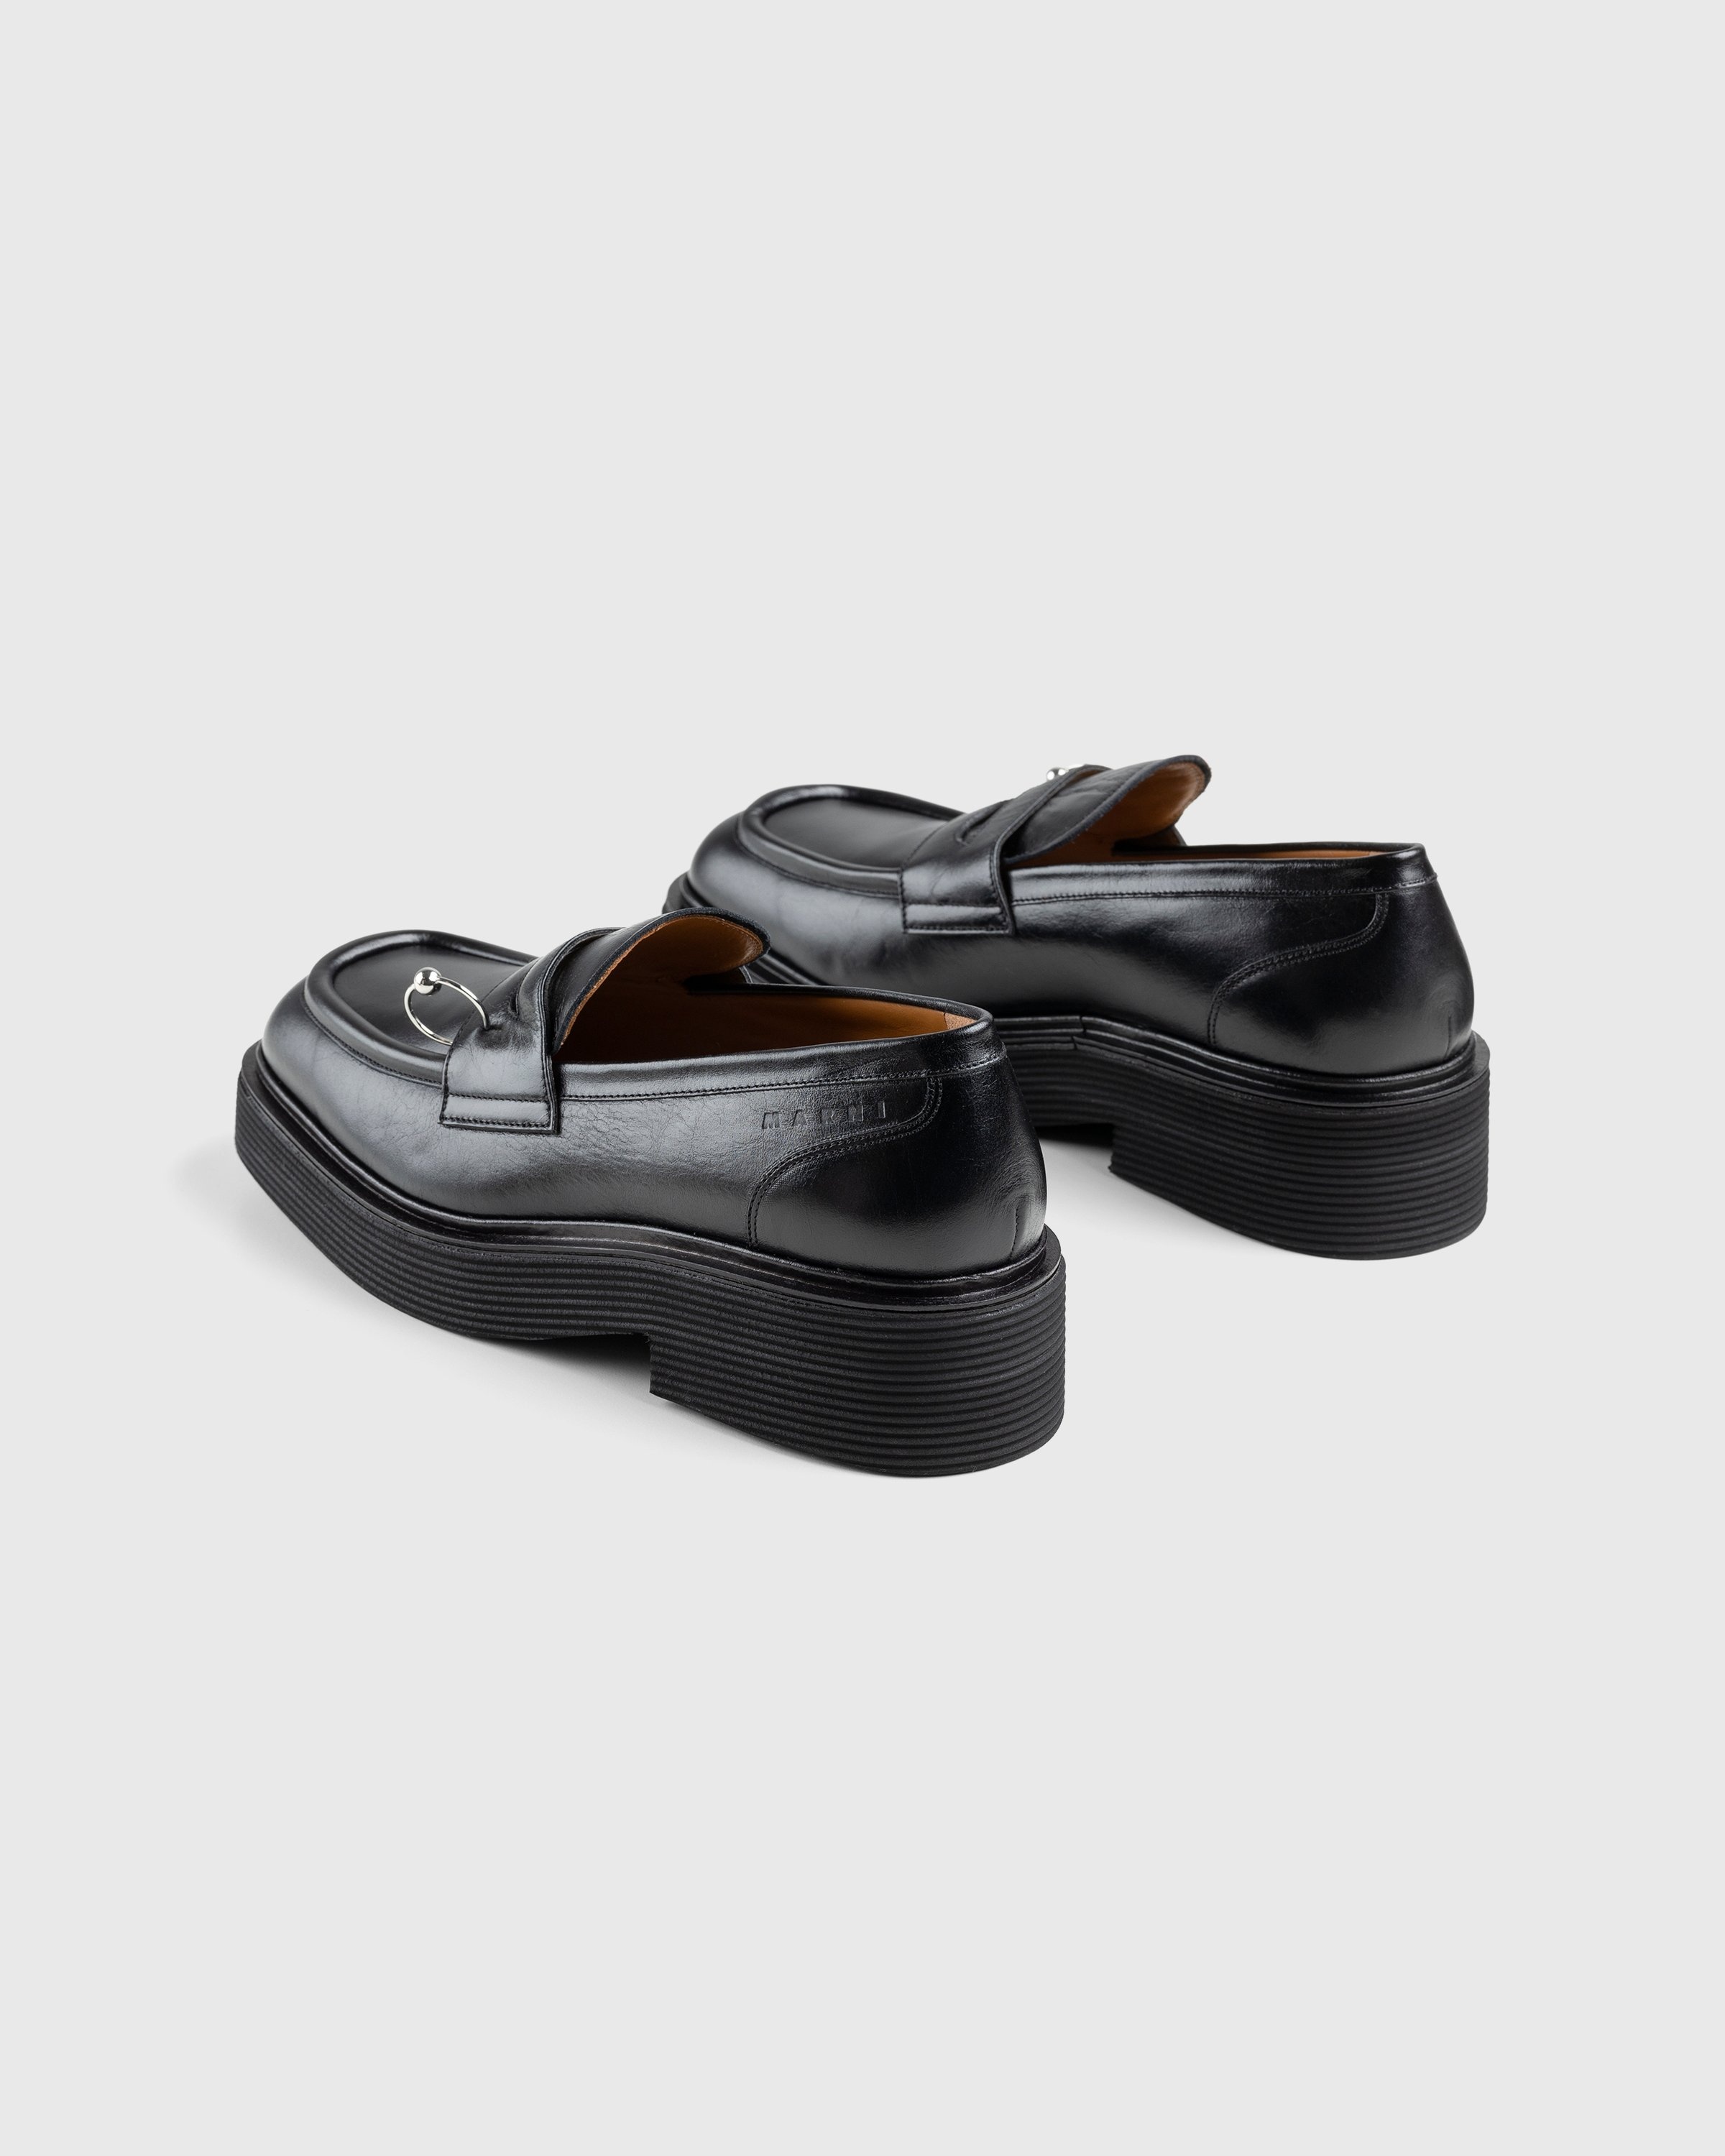 Marni – Shiny Leather Moccasin Black - Shoes - Black - Image 3